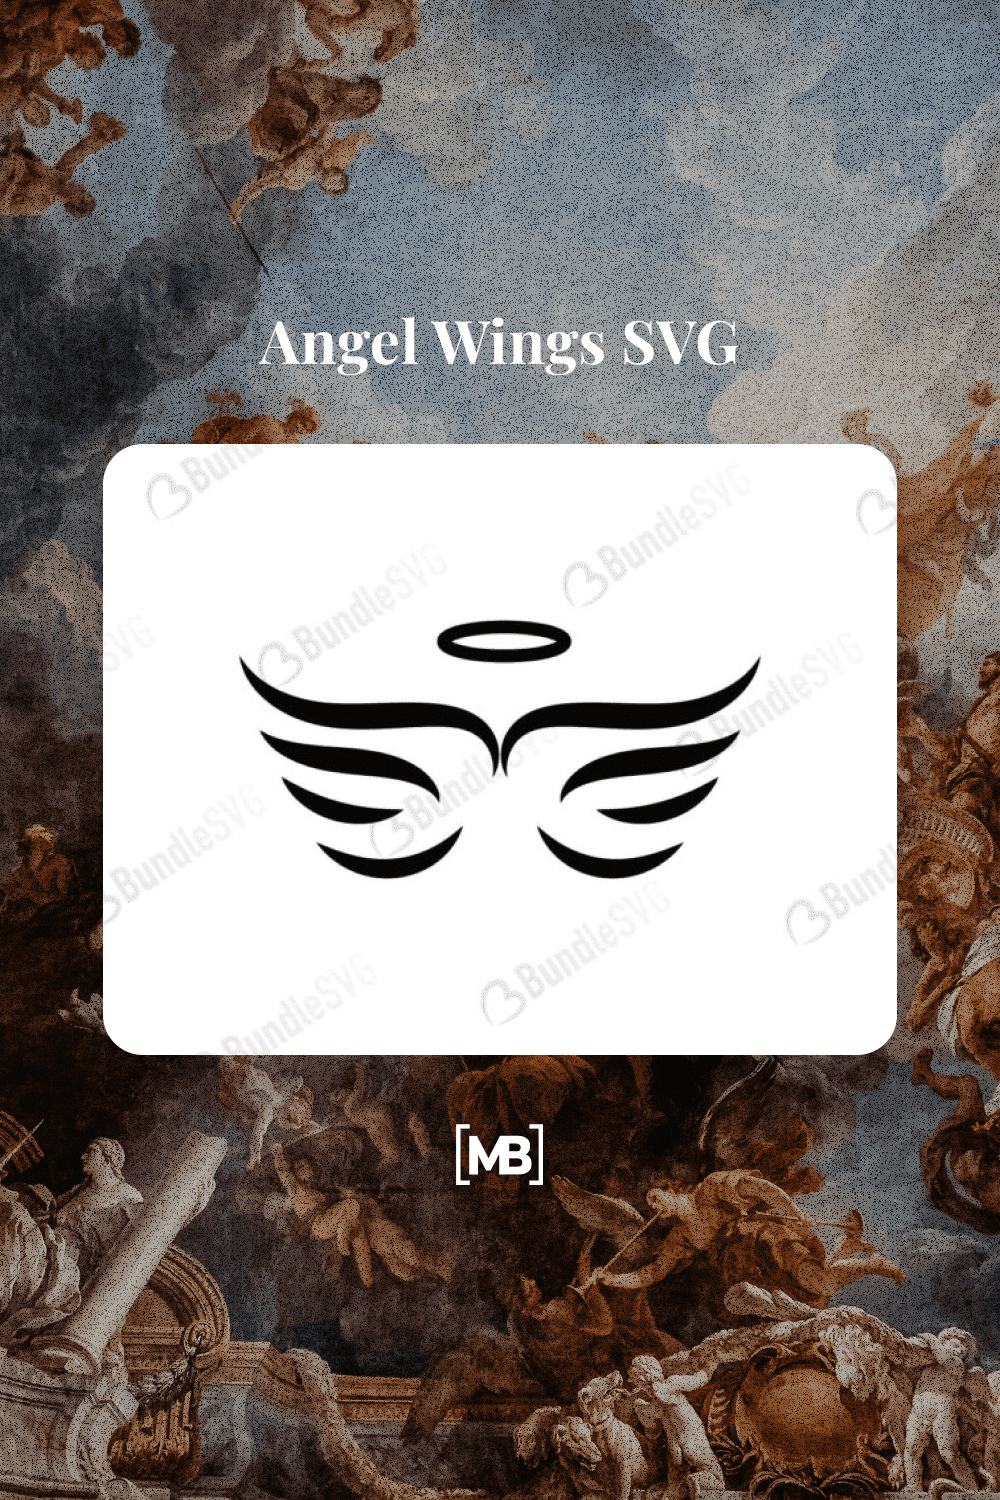 Angel Wings SVG.